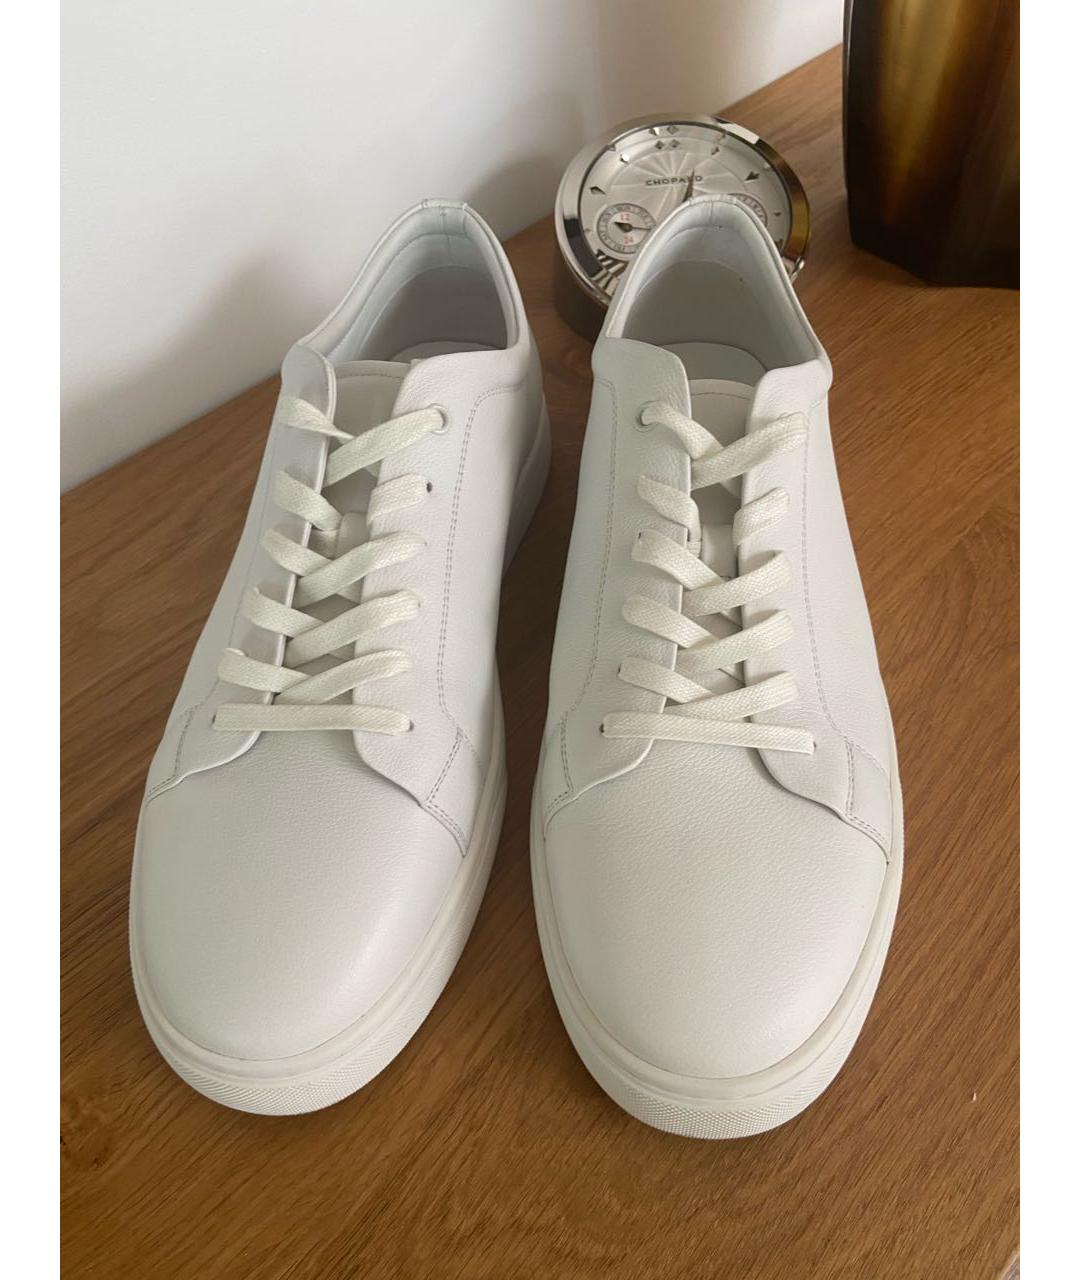 12 STOREEZ Белые кожаные низкие кроссовки / кеды, фото 2